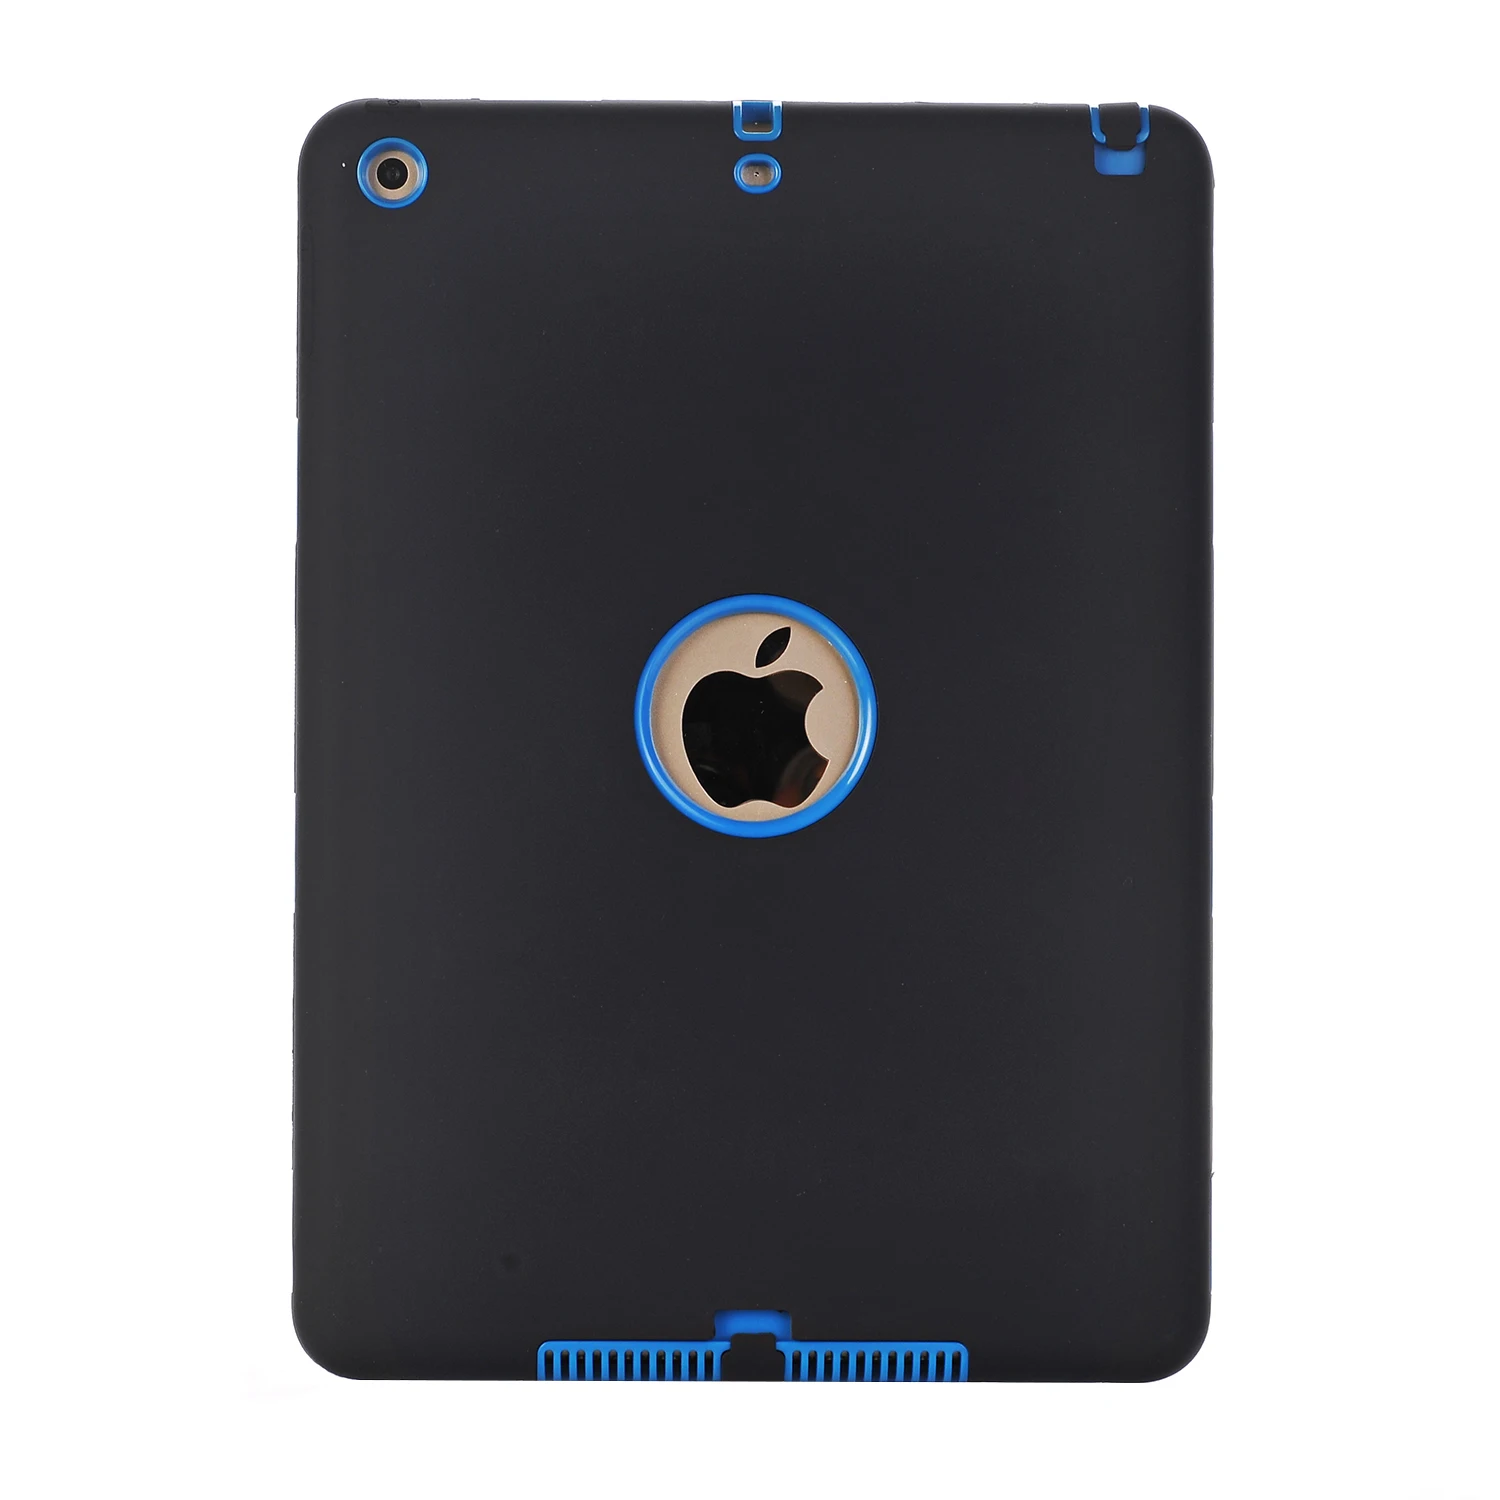 Чехол для нового iPad 9,"(A1822/A1823), ударопрочный противоударный 3 слоя мягкий резиновый силиконовый чехол-бампер+ Жесткий ПК Защитный чехол в виде ракушки - Цвет: Black Blue